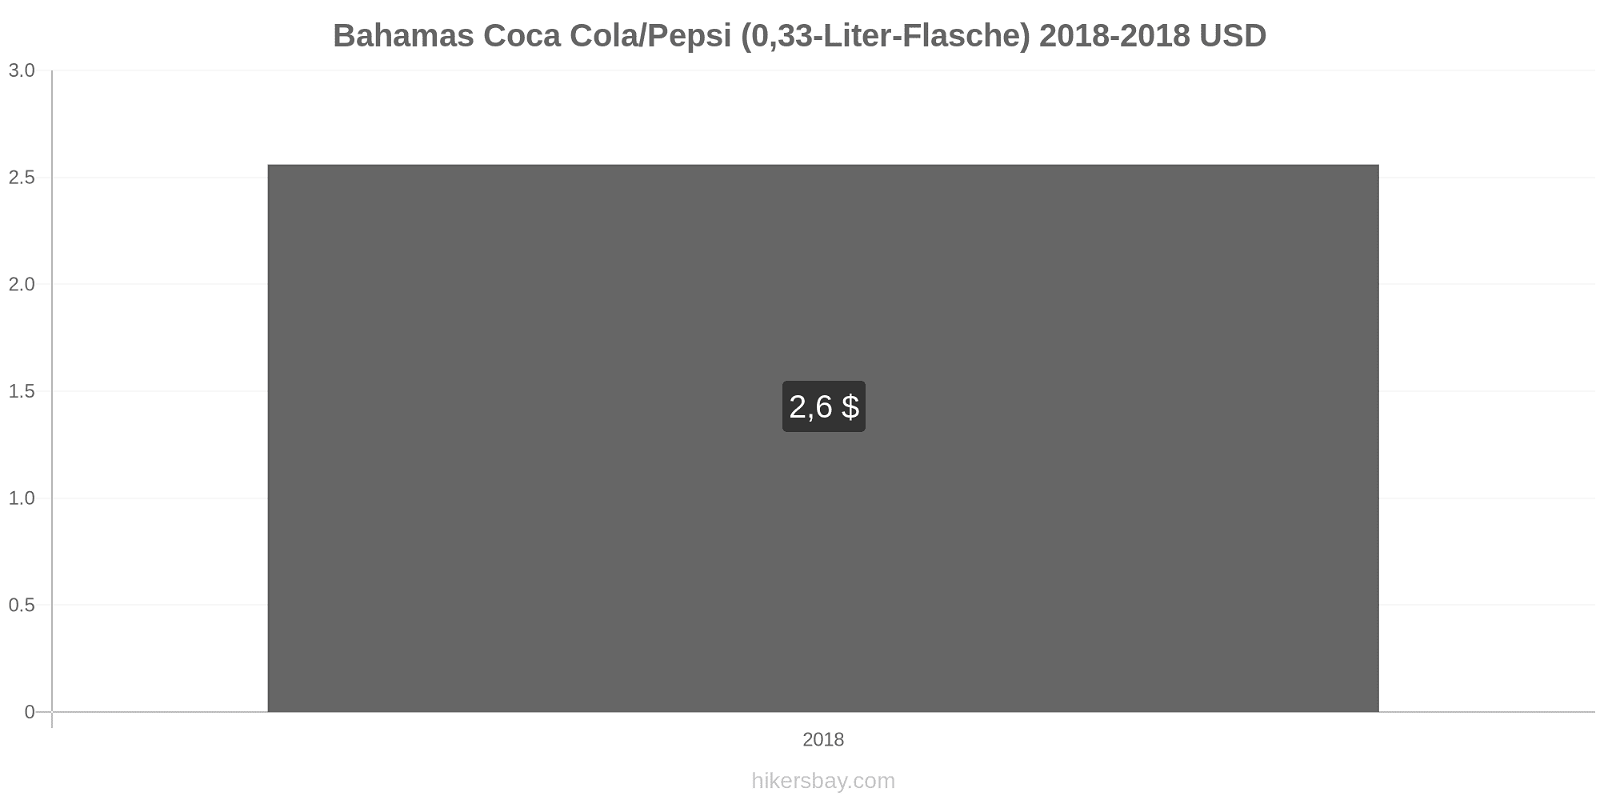 Bahamas Preisänderungen Coke/Pepsi (0,33-Liter-Flasche) hikersbay.com